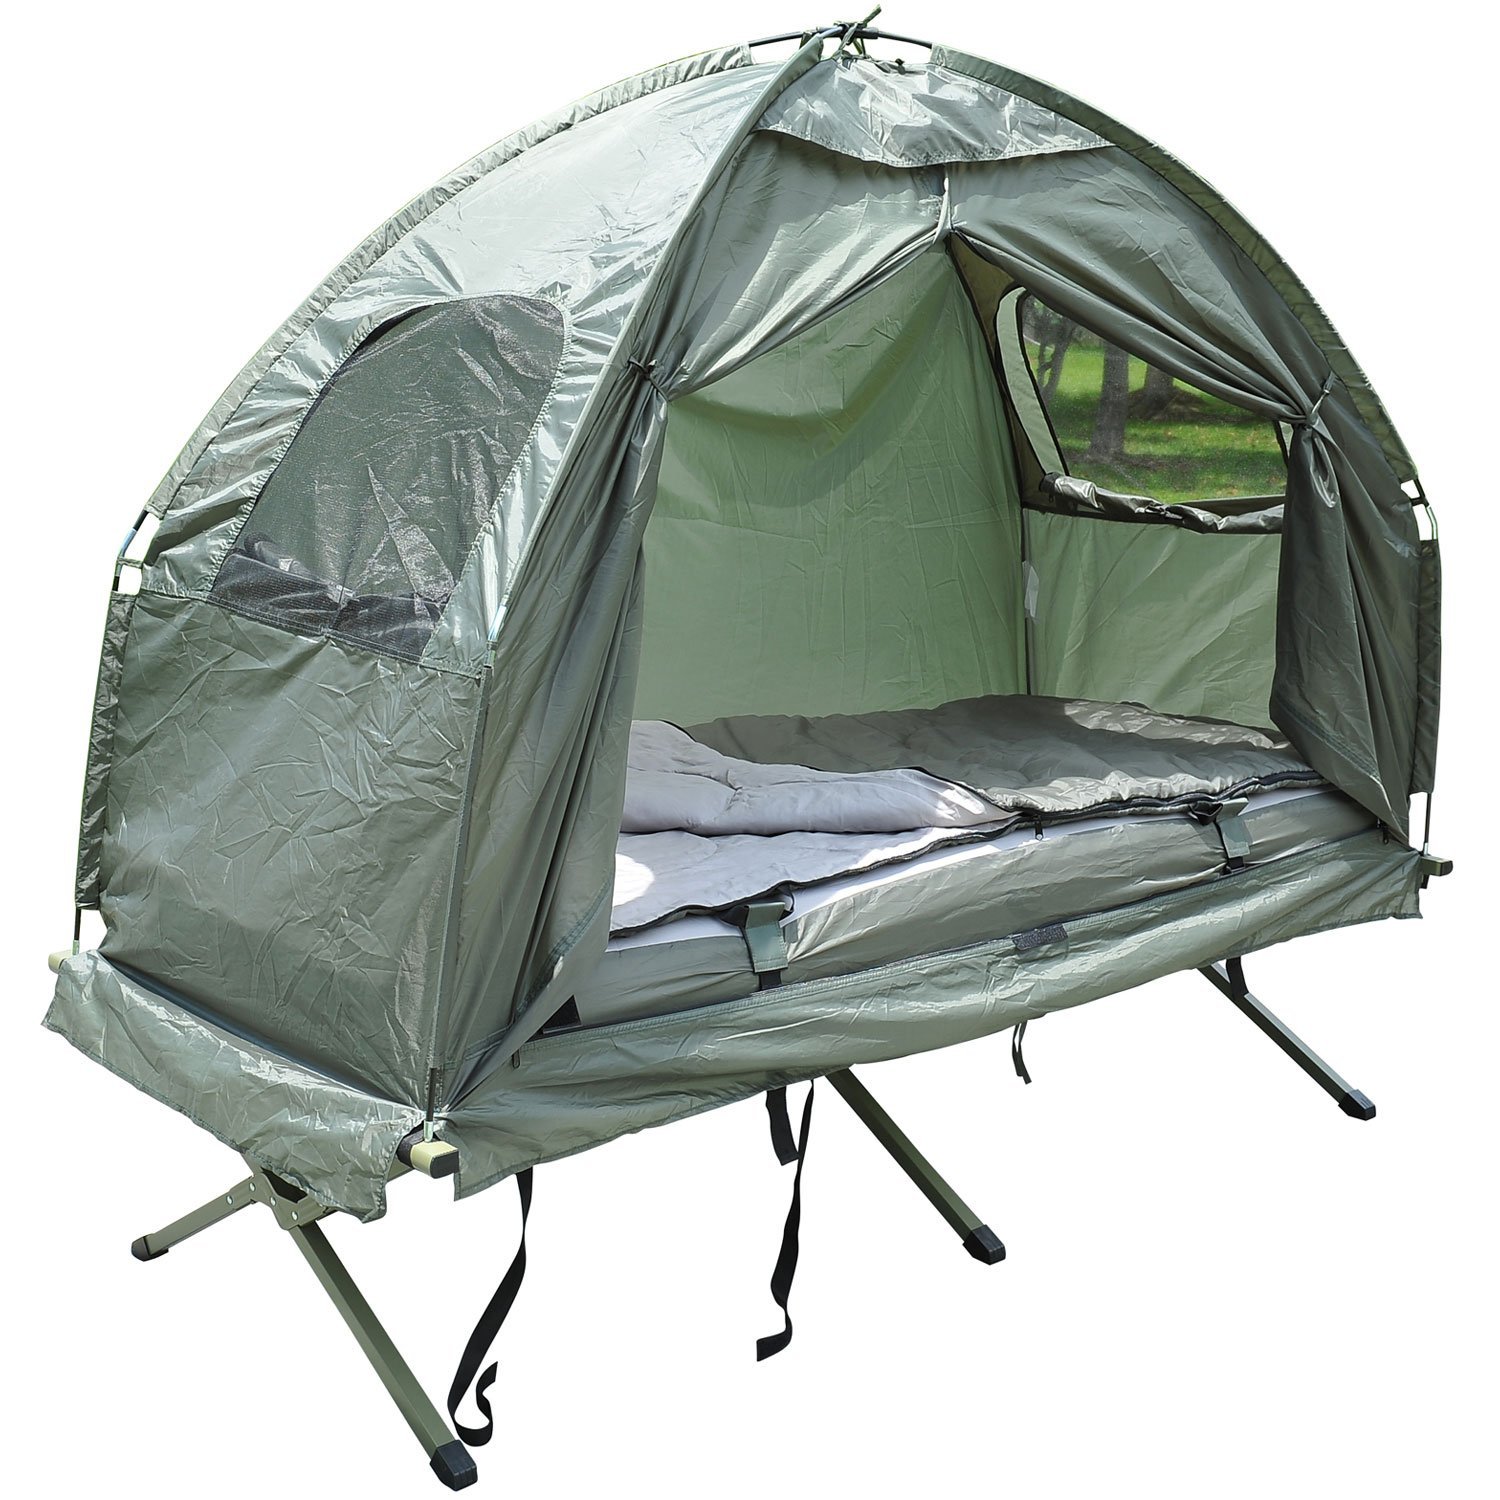 Tent Cot With Mattress Shop, 57% OFF | www.emanagreen.com